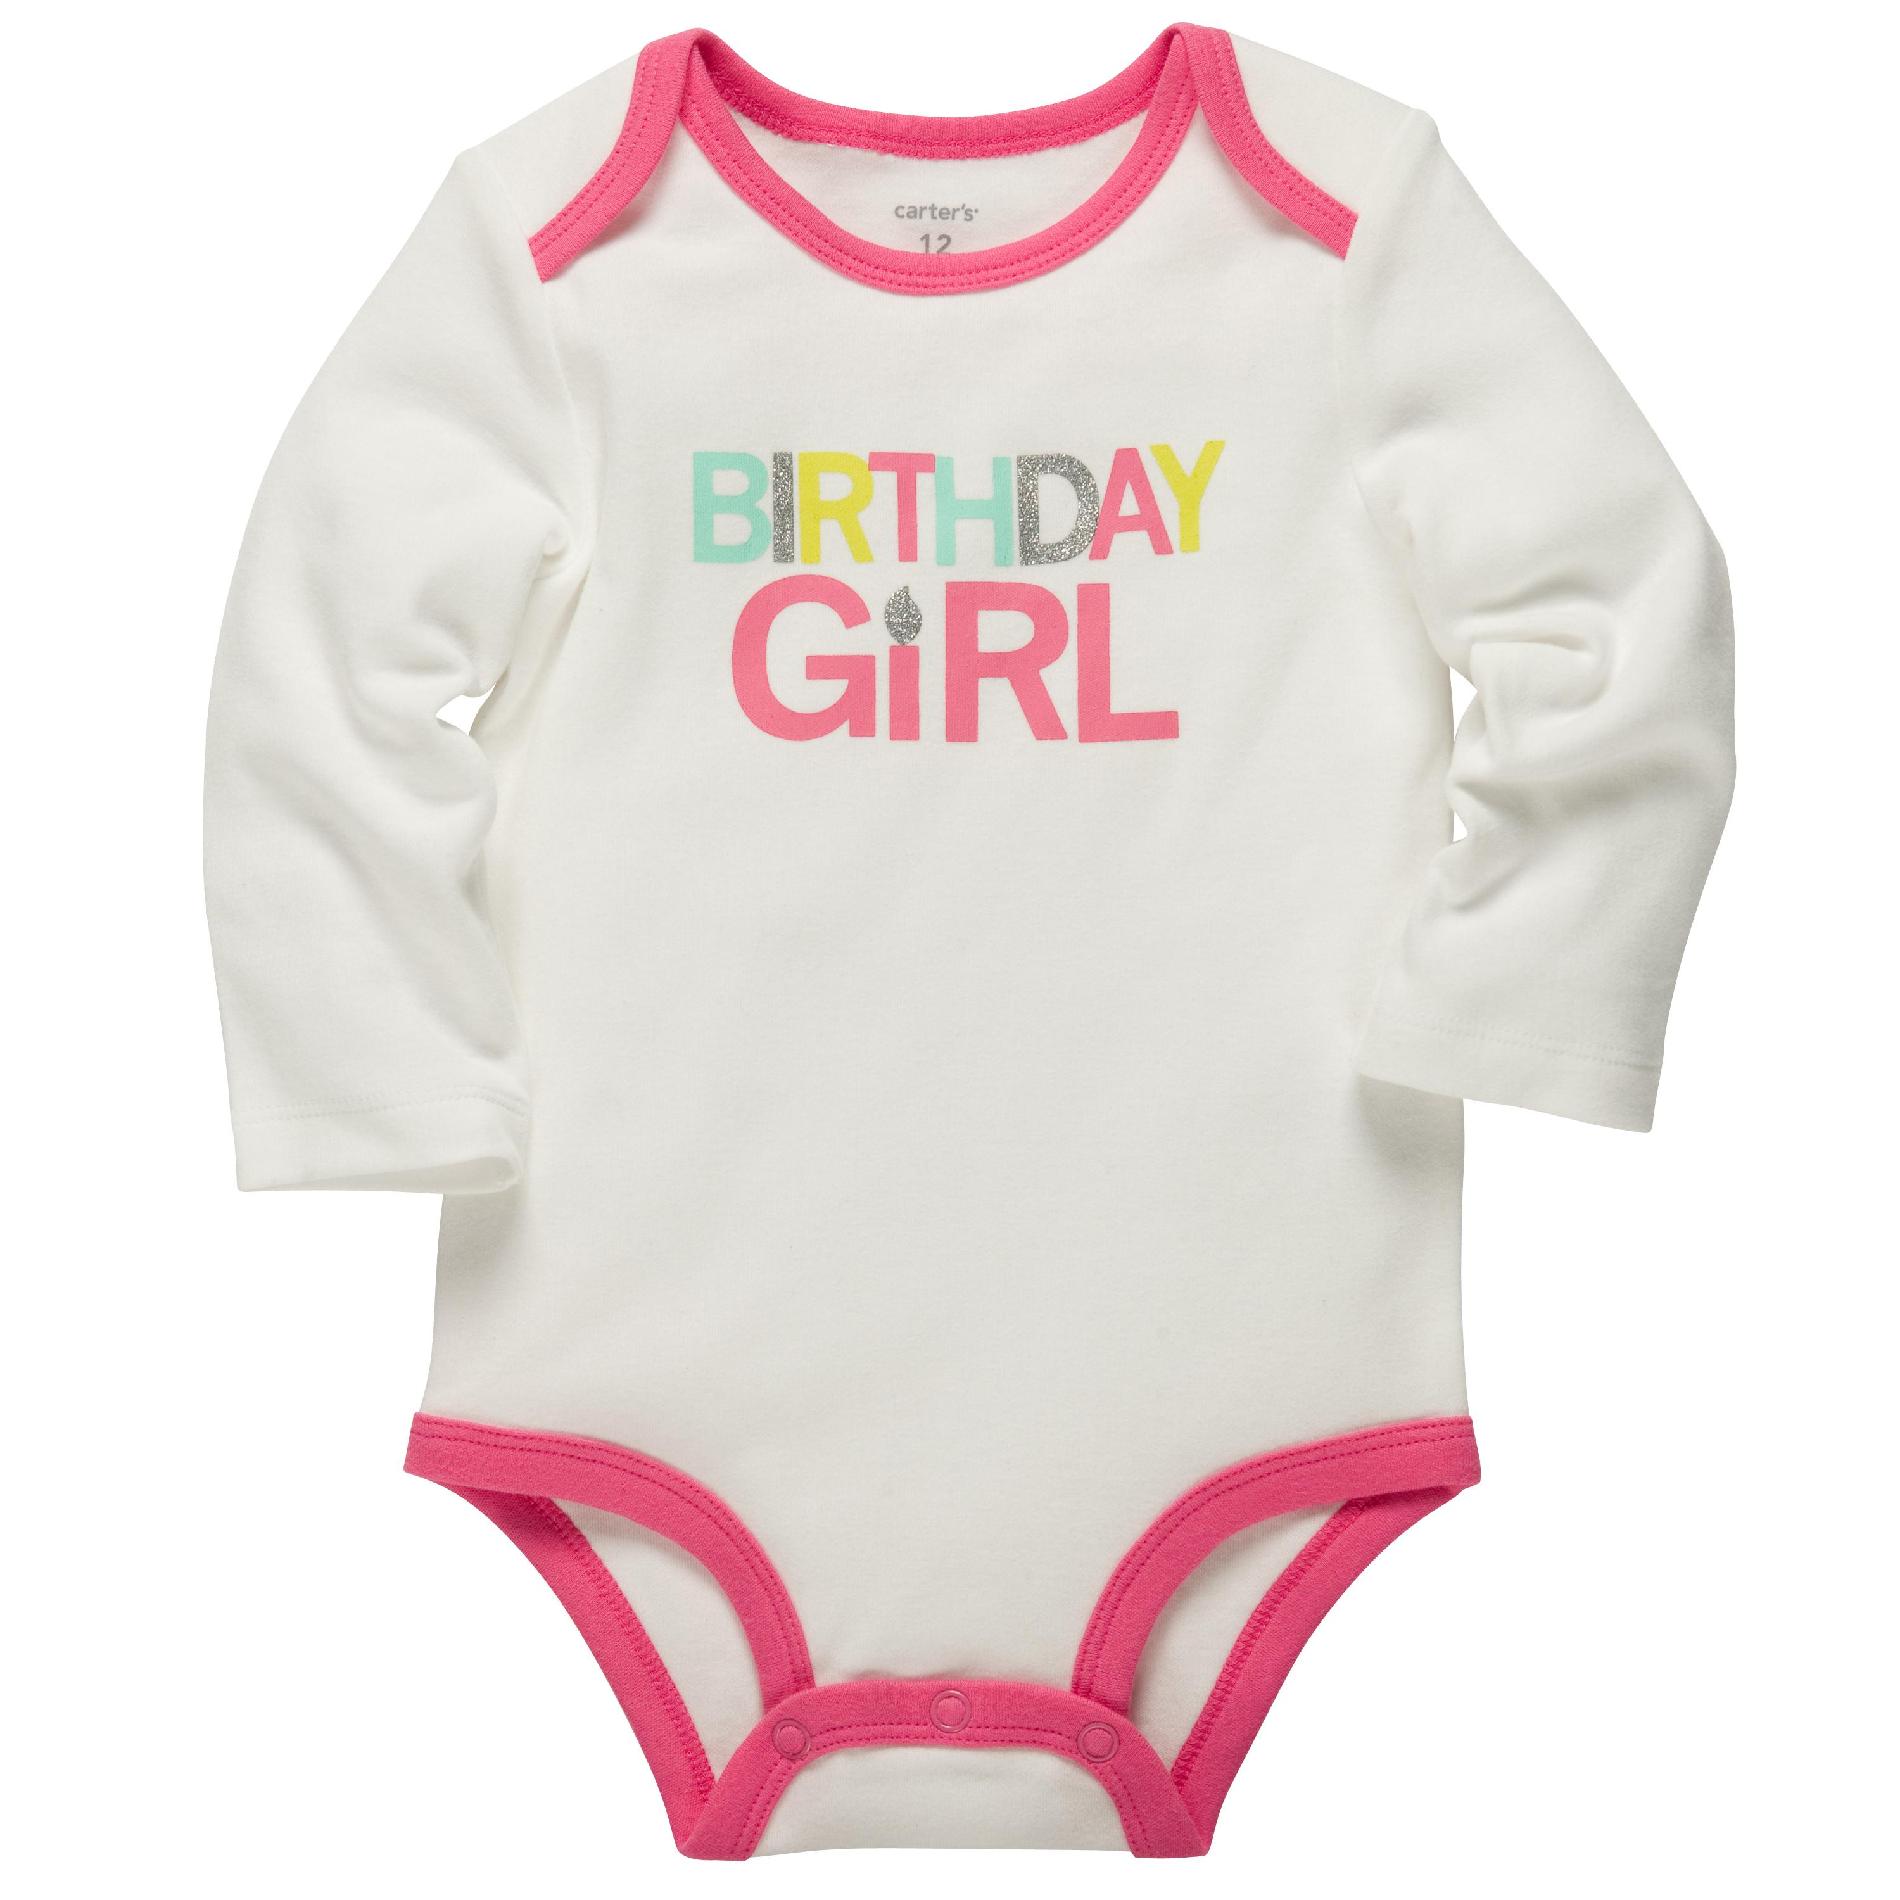 Carter's Infant Girl's Bodysuit - Birthday Girl